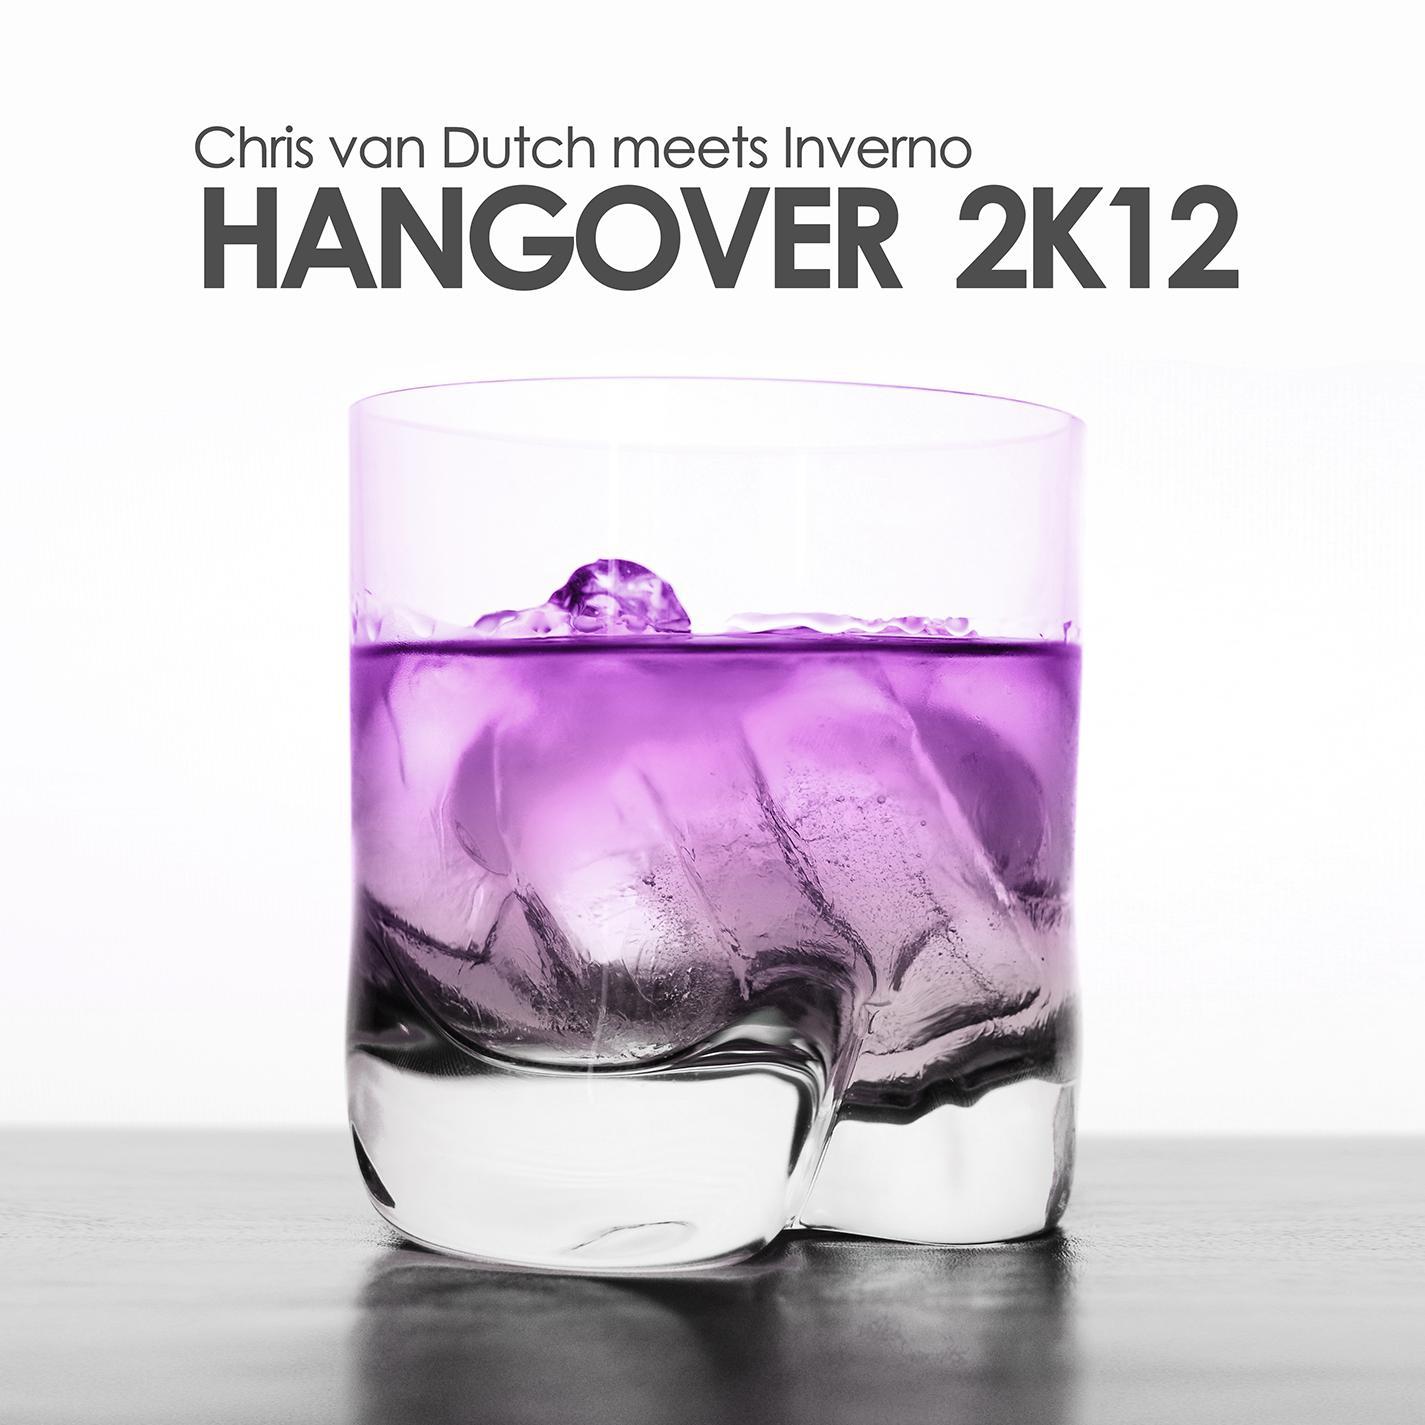 Chris Van Dutch - Hangover 2k12 (Chris van Dutch meets Inverno) (Danceboy Remix)